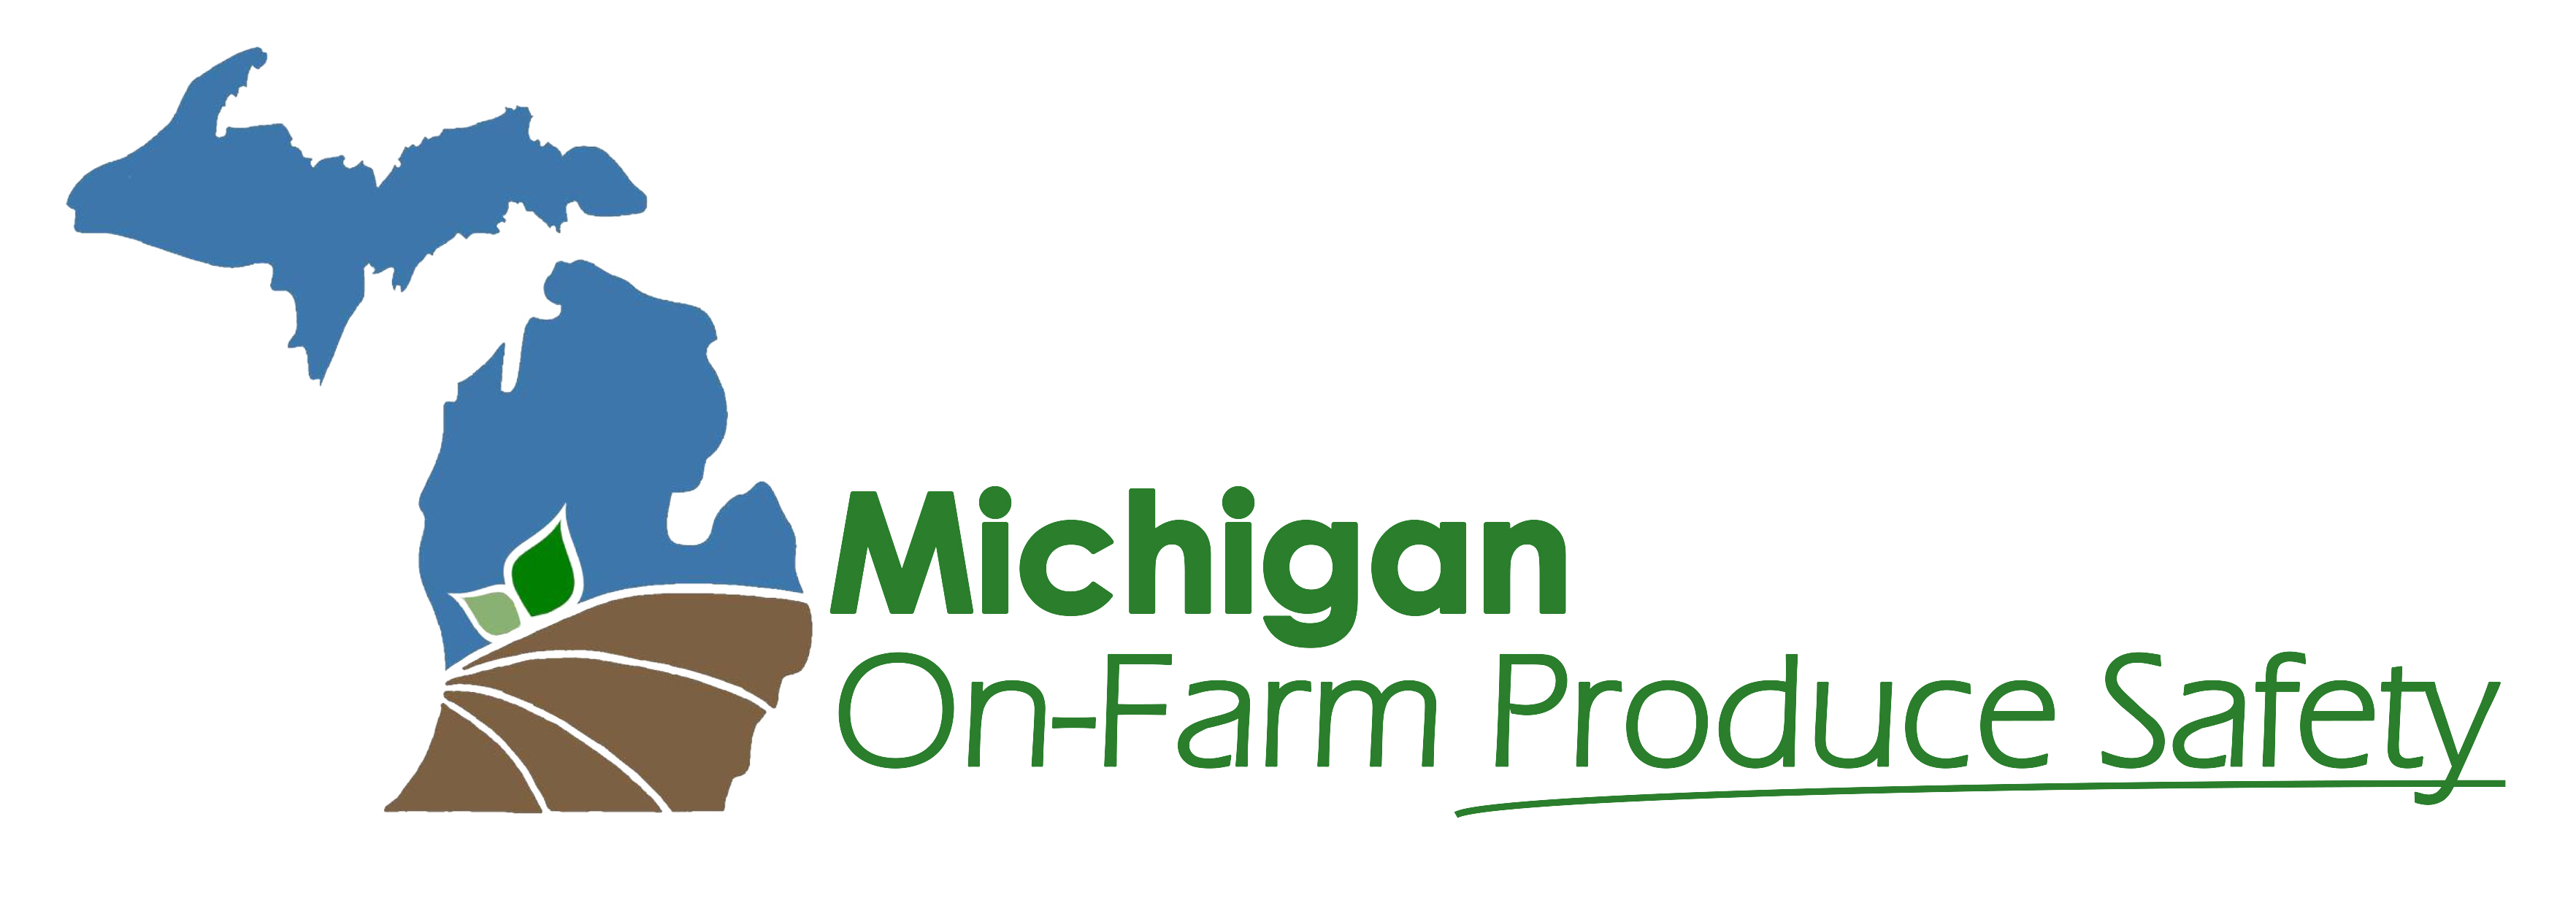 Michigan On-Farm Produce Safety logo